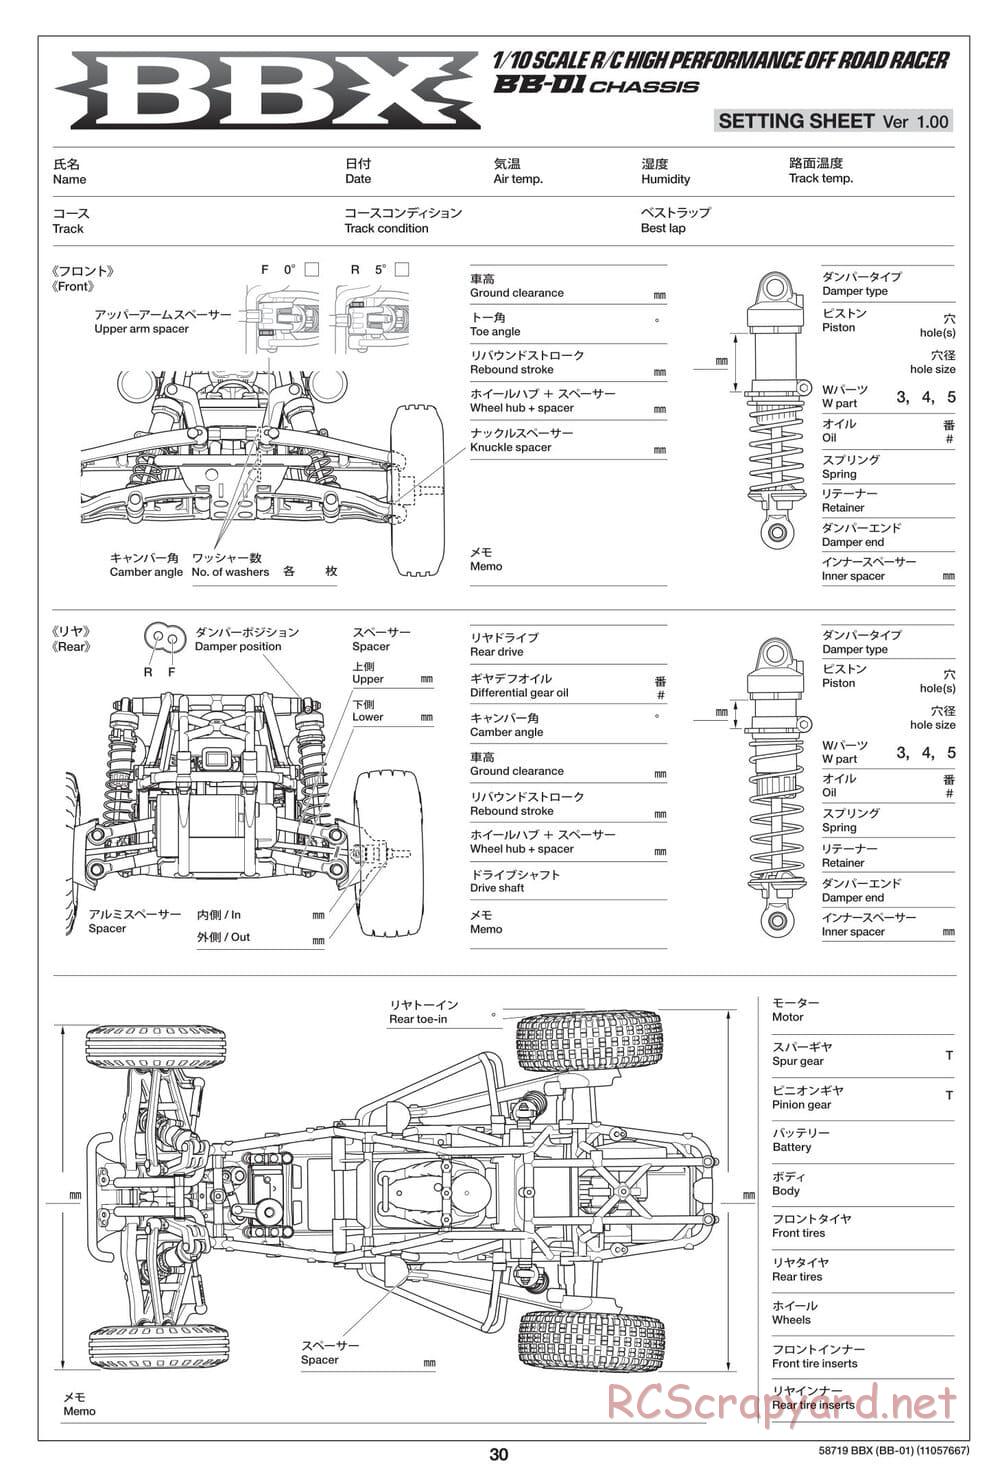 Tamiya - BBX - BB-01 Chassis - Manual - Page 30